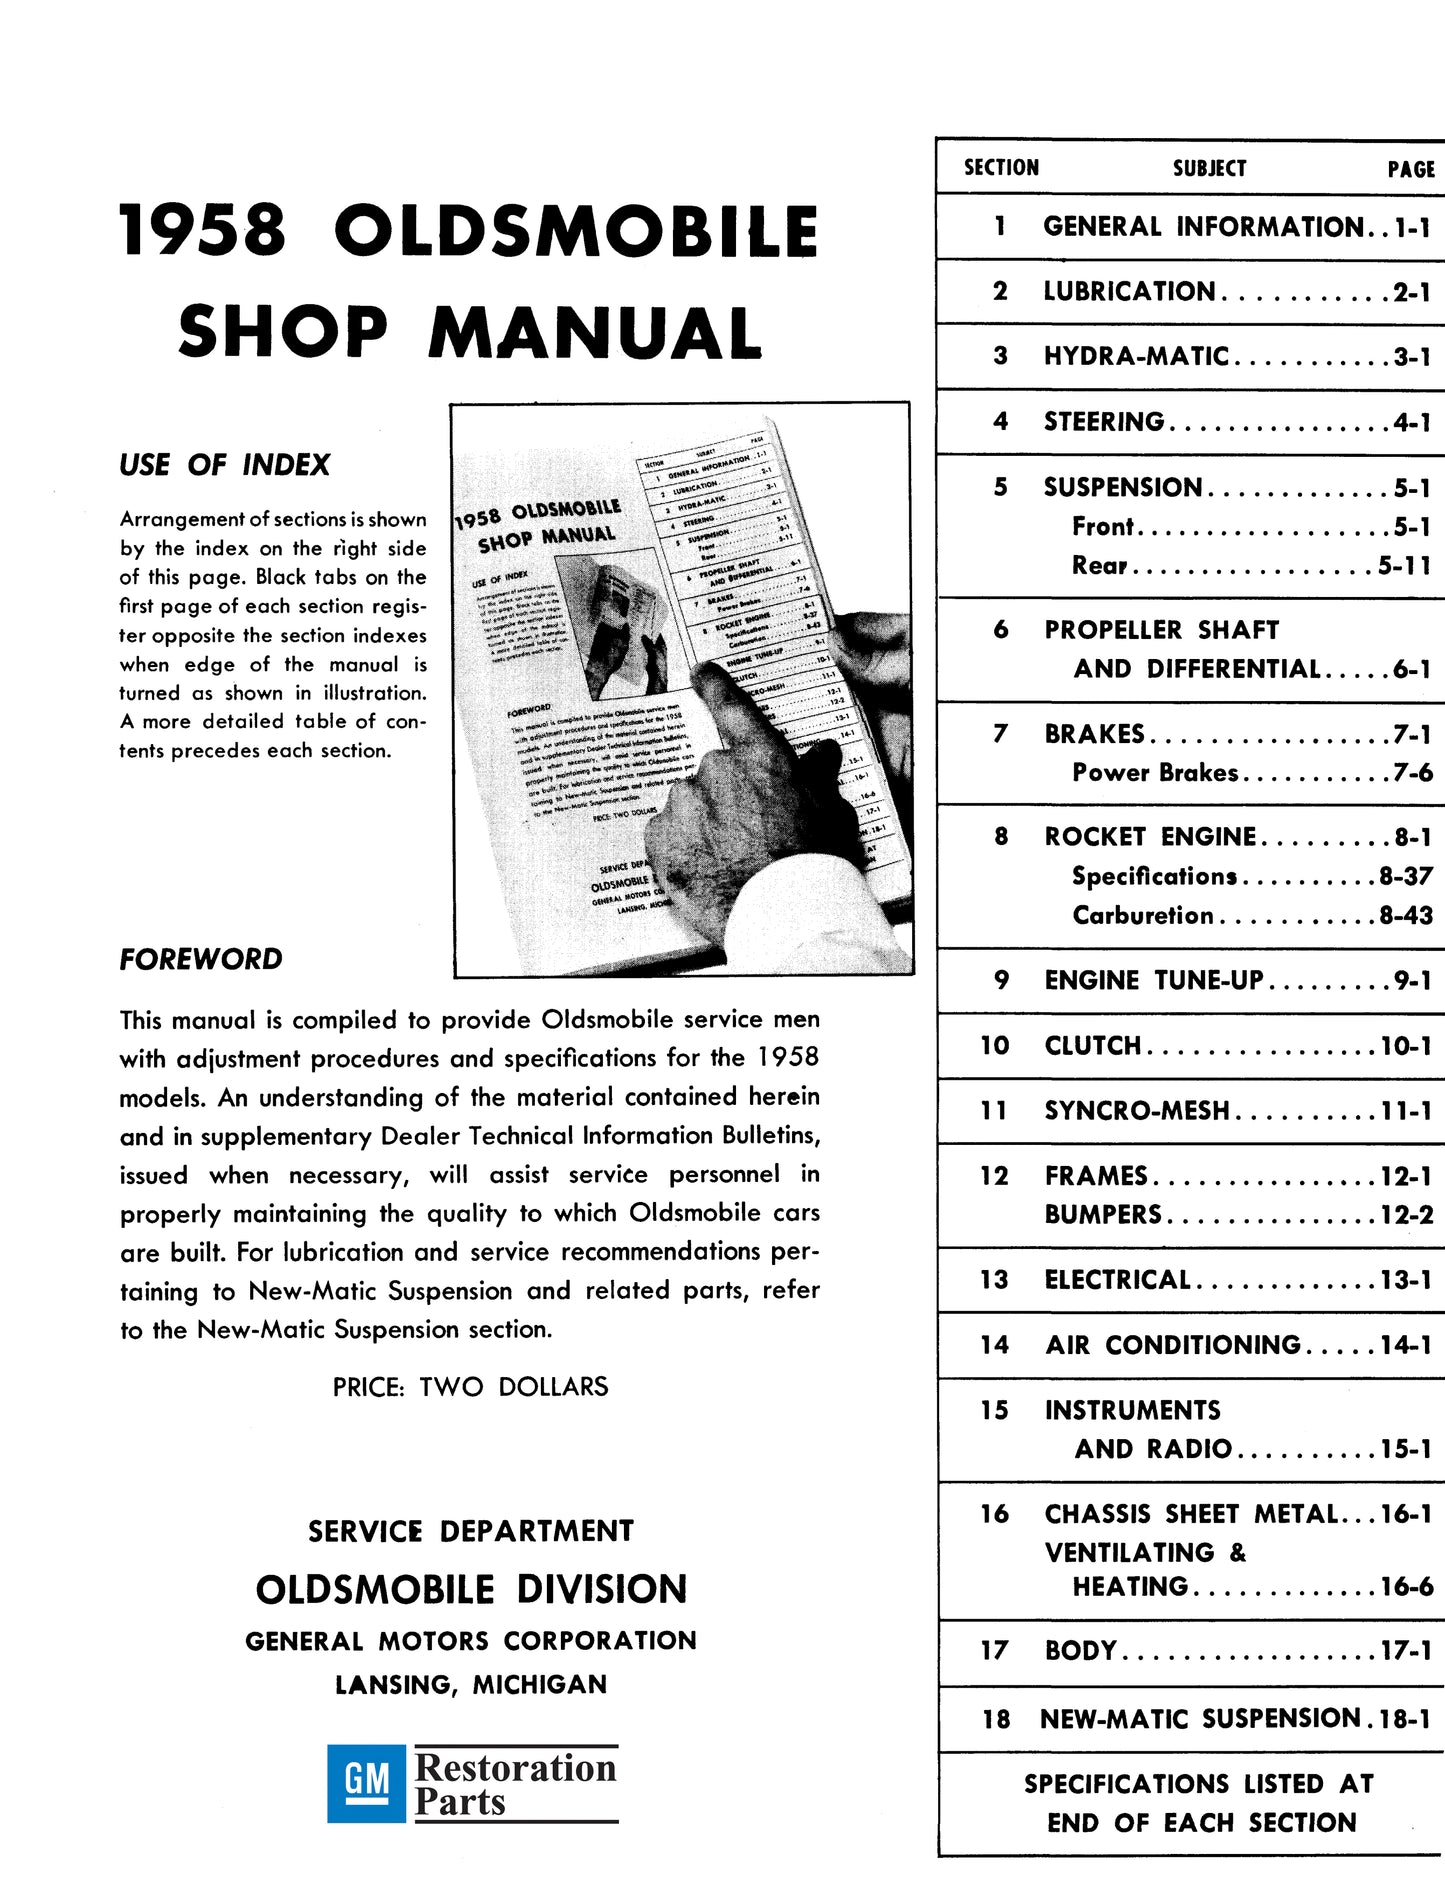 1958 Oldsmobile Shop Manual- All Models